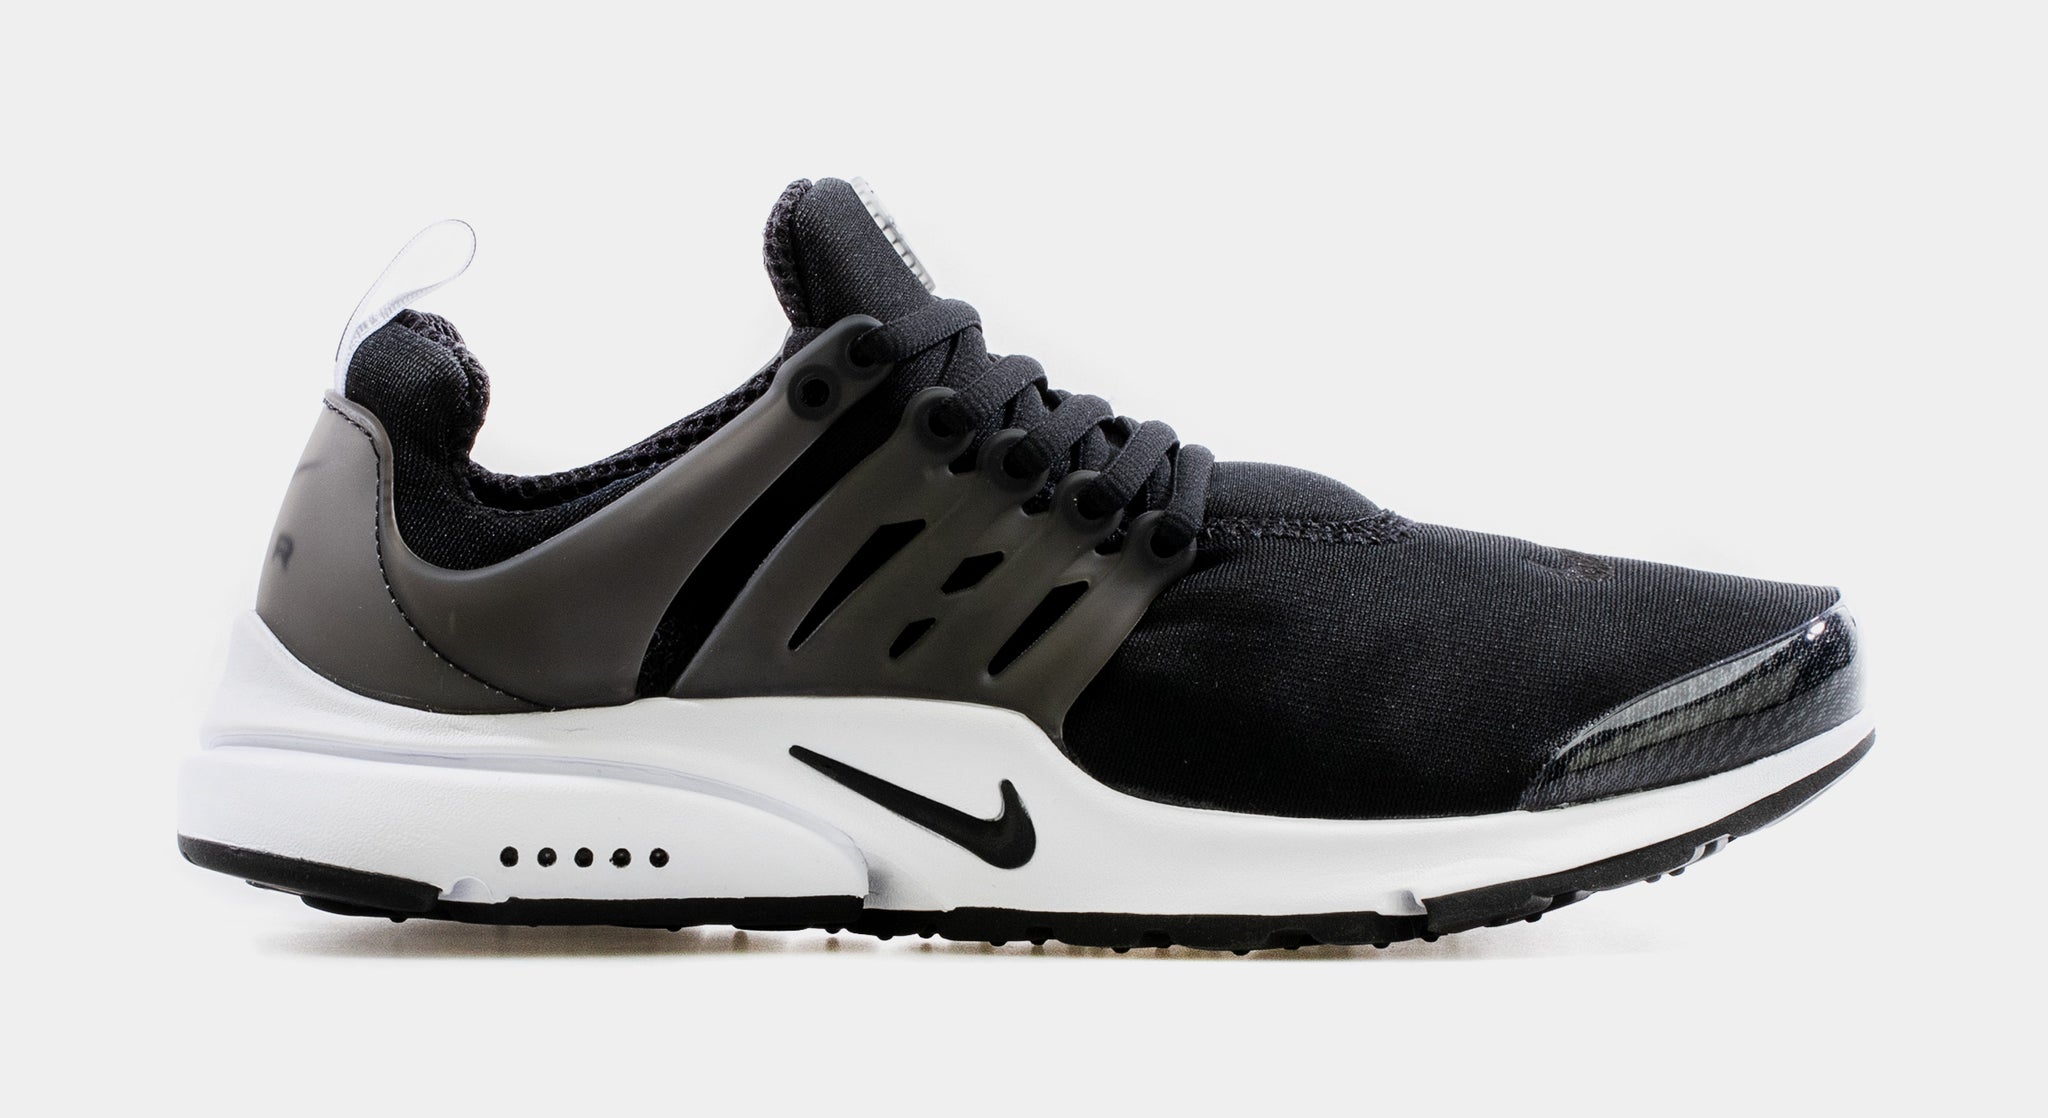 overloop koolhydraat professioneel Nike Air Presto Mens Running Shoes Black CT3550-001 – Shoe Palace